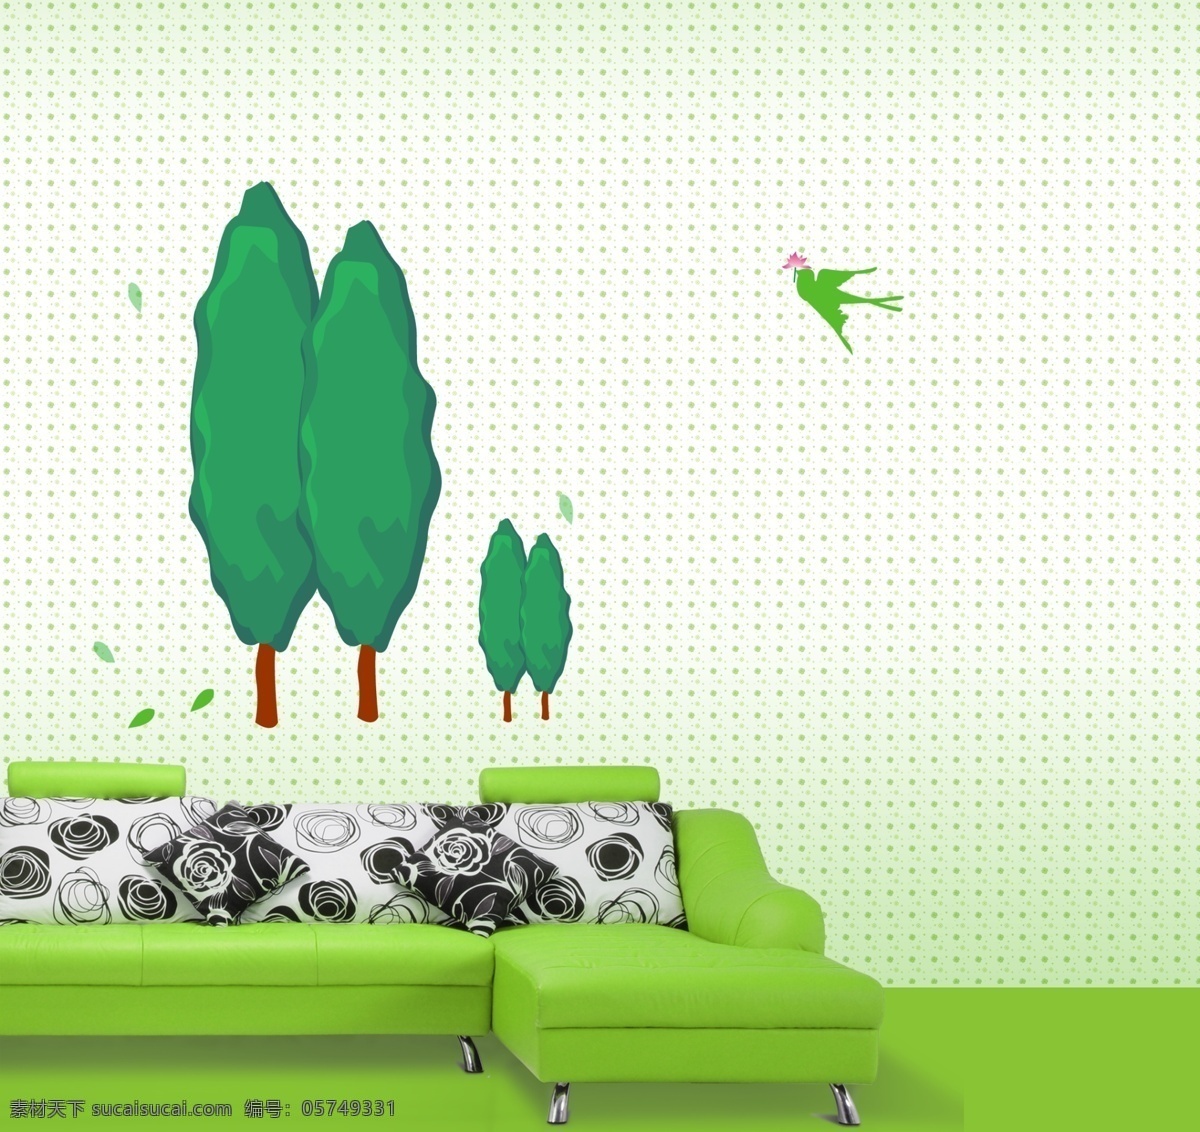 春天 气息 春天的气息 花纹 环境设计 沙发 室内设计 树木 树叶 源文件 飞鸟剪影 壁纸墙贴 psd源文件